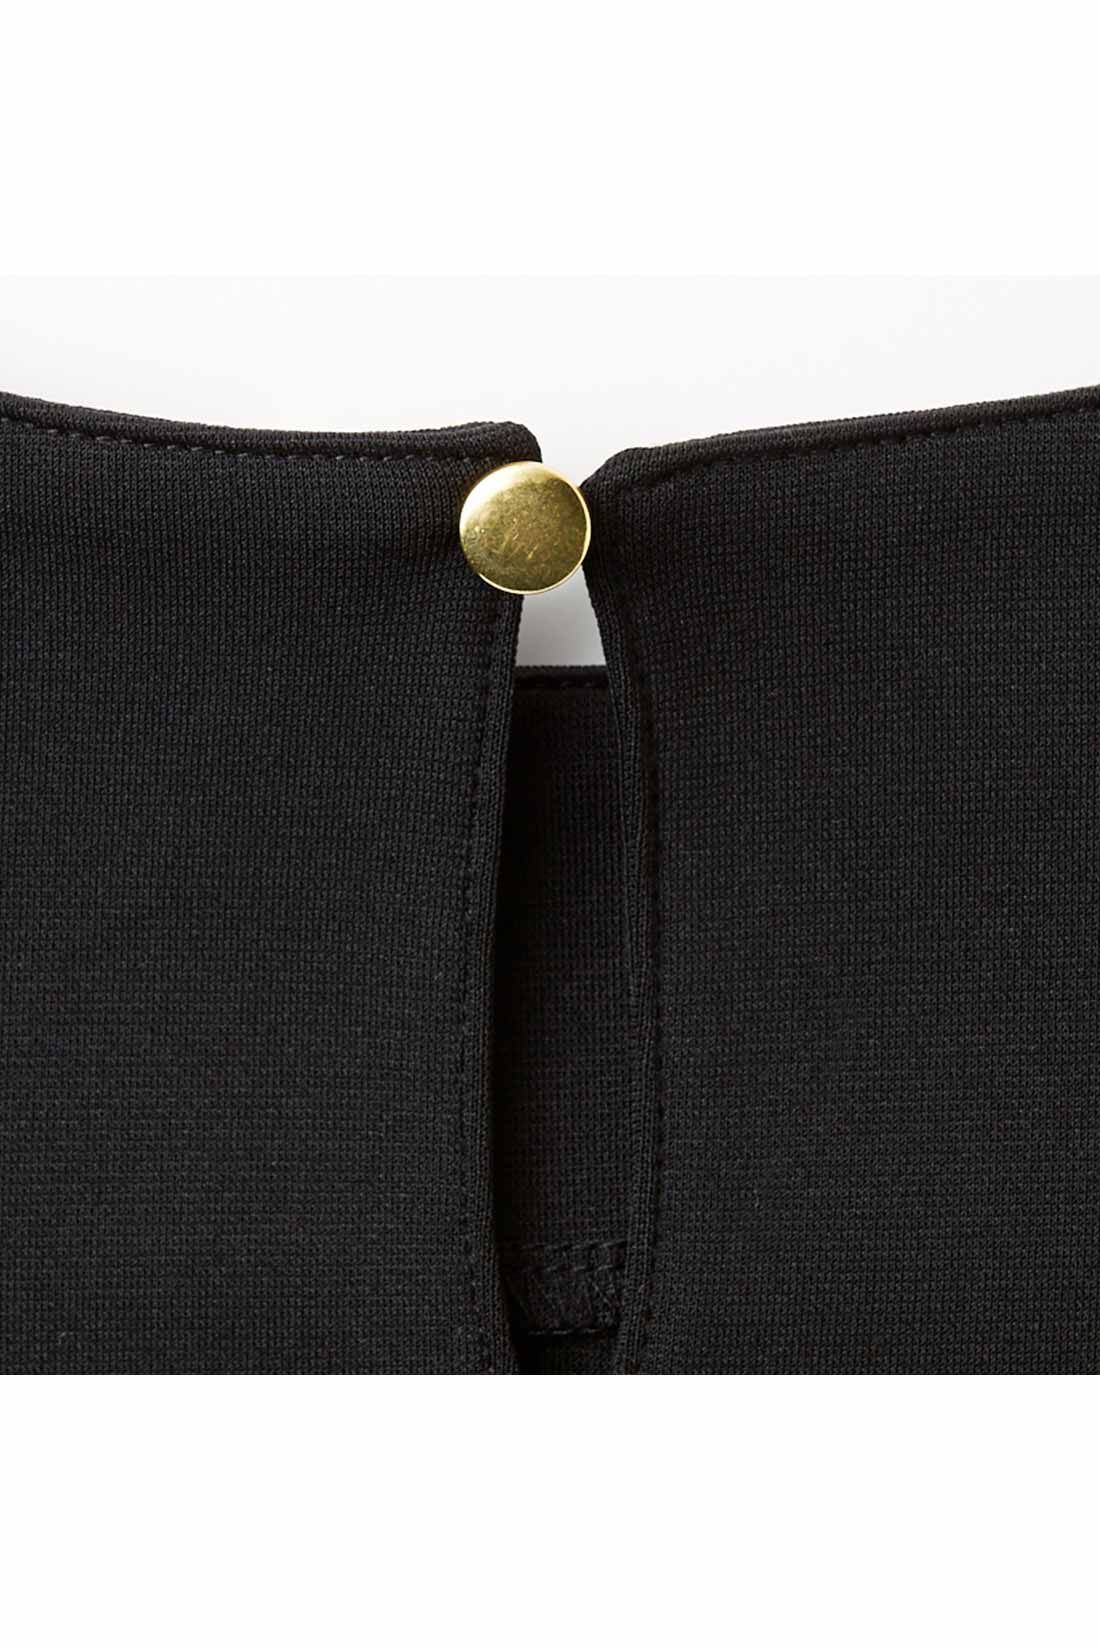 IEDIT|IEDIT[イディット]　花粉リリース＆UVカットで快適優秀なブラックワンピース〈ブラック〉|さりげない抜け感が女性らしい涙開きデザインと小さなボタンが、後ろ姿のアクセント。